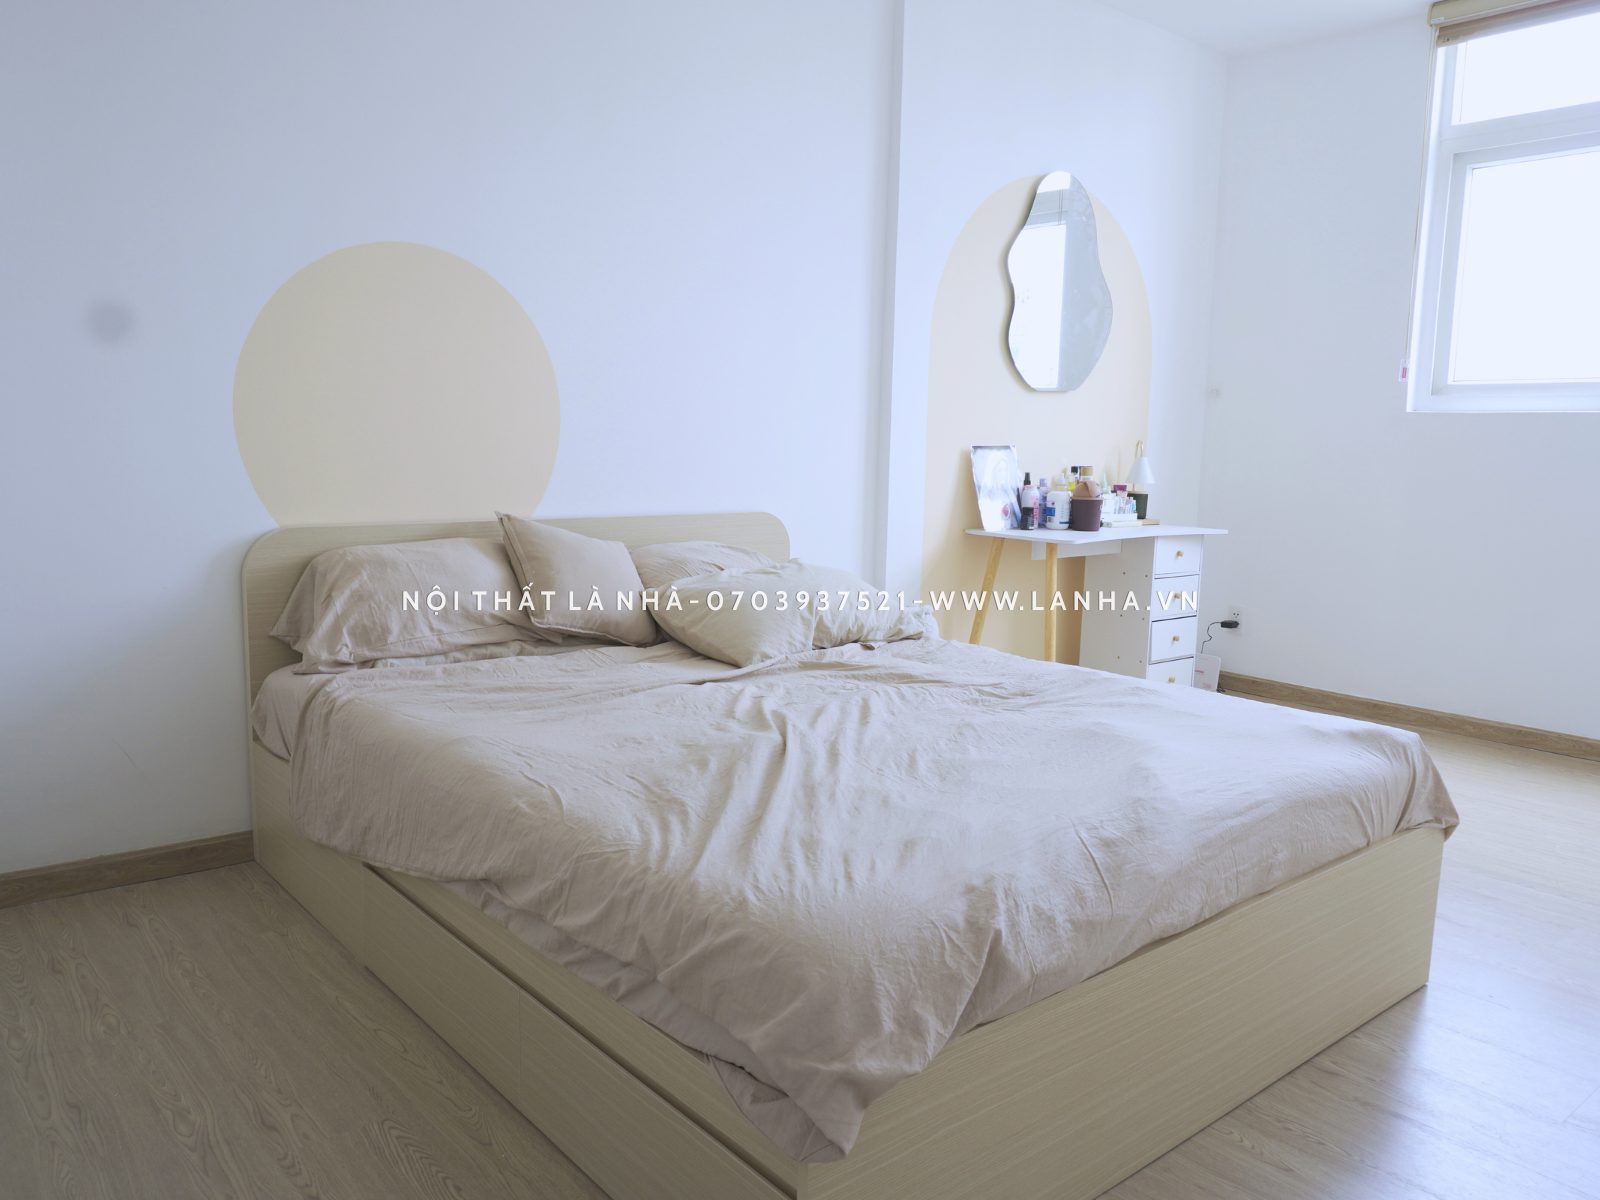 Phòng ngủ chung cư CitiGate thiết kế tối giản, hiện đại